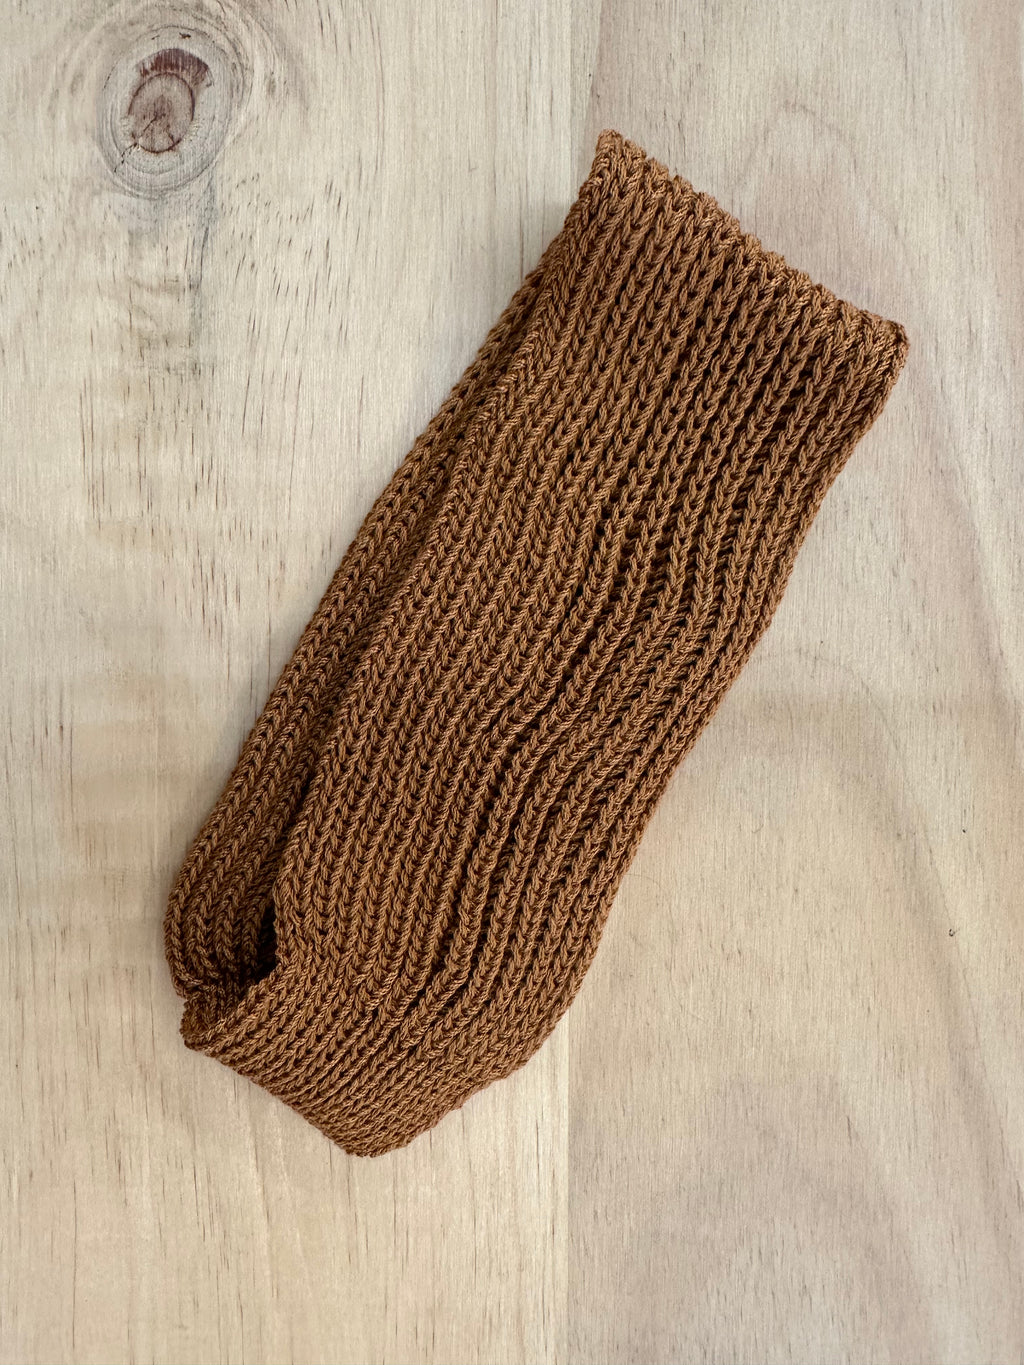 Ribbed Headband — Caramel - LAST PIECE